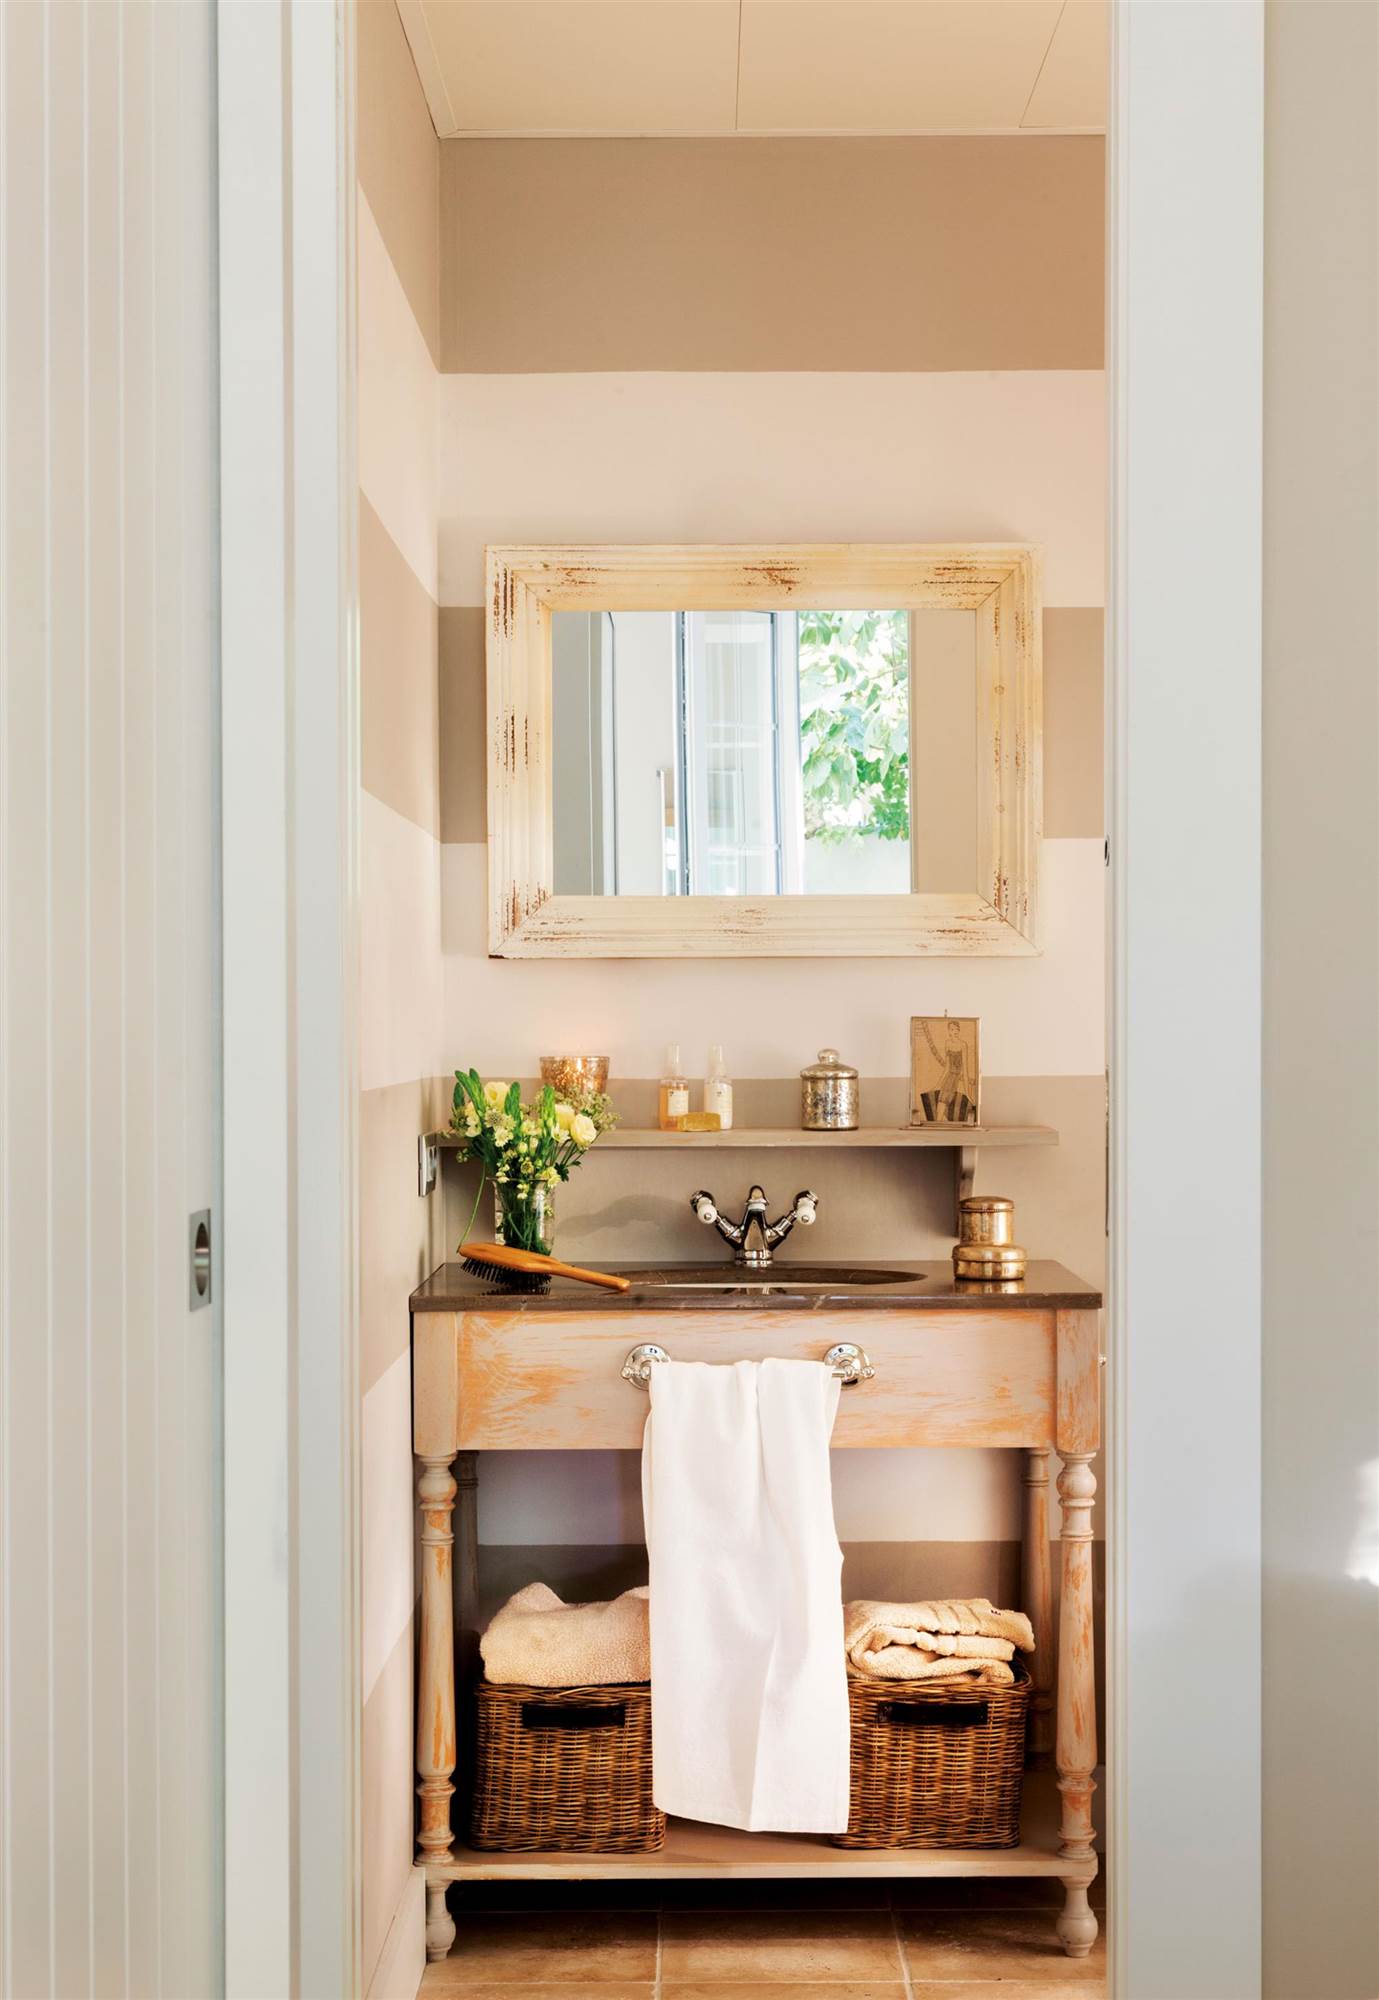 Baño pequeño con mueble de diseño clásico de aspecto enjevecido. Balda con cestas de fibras.